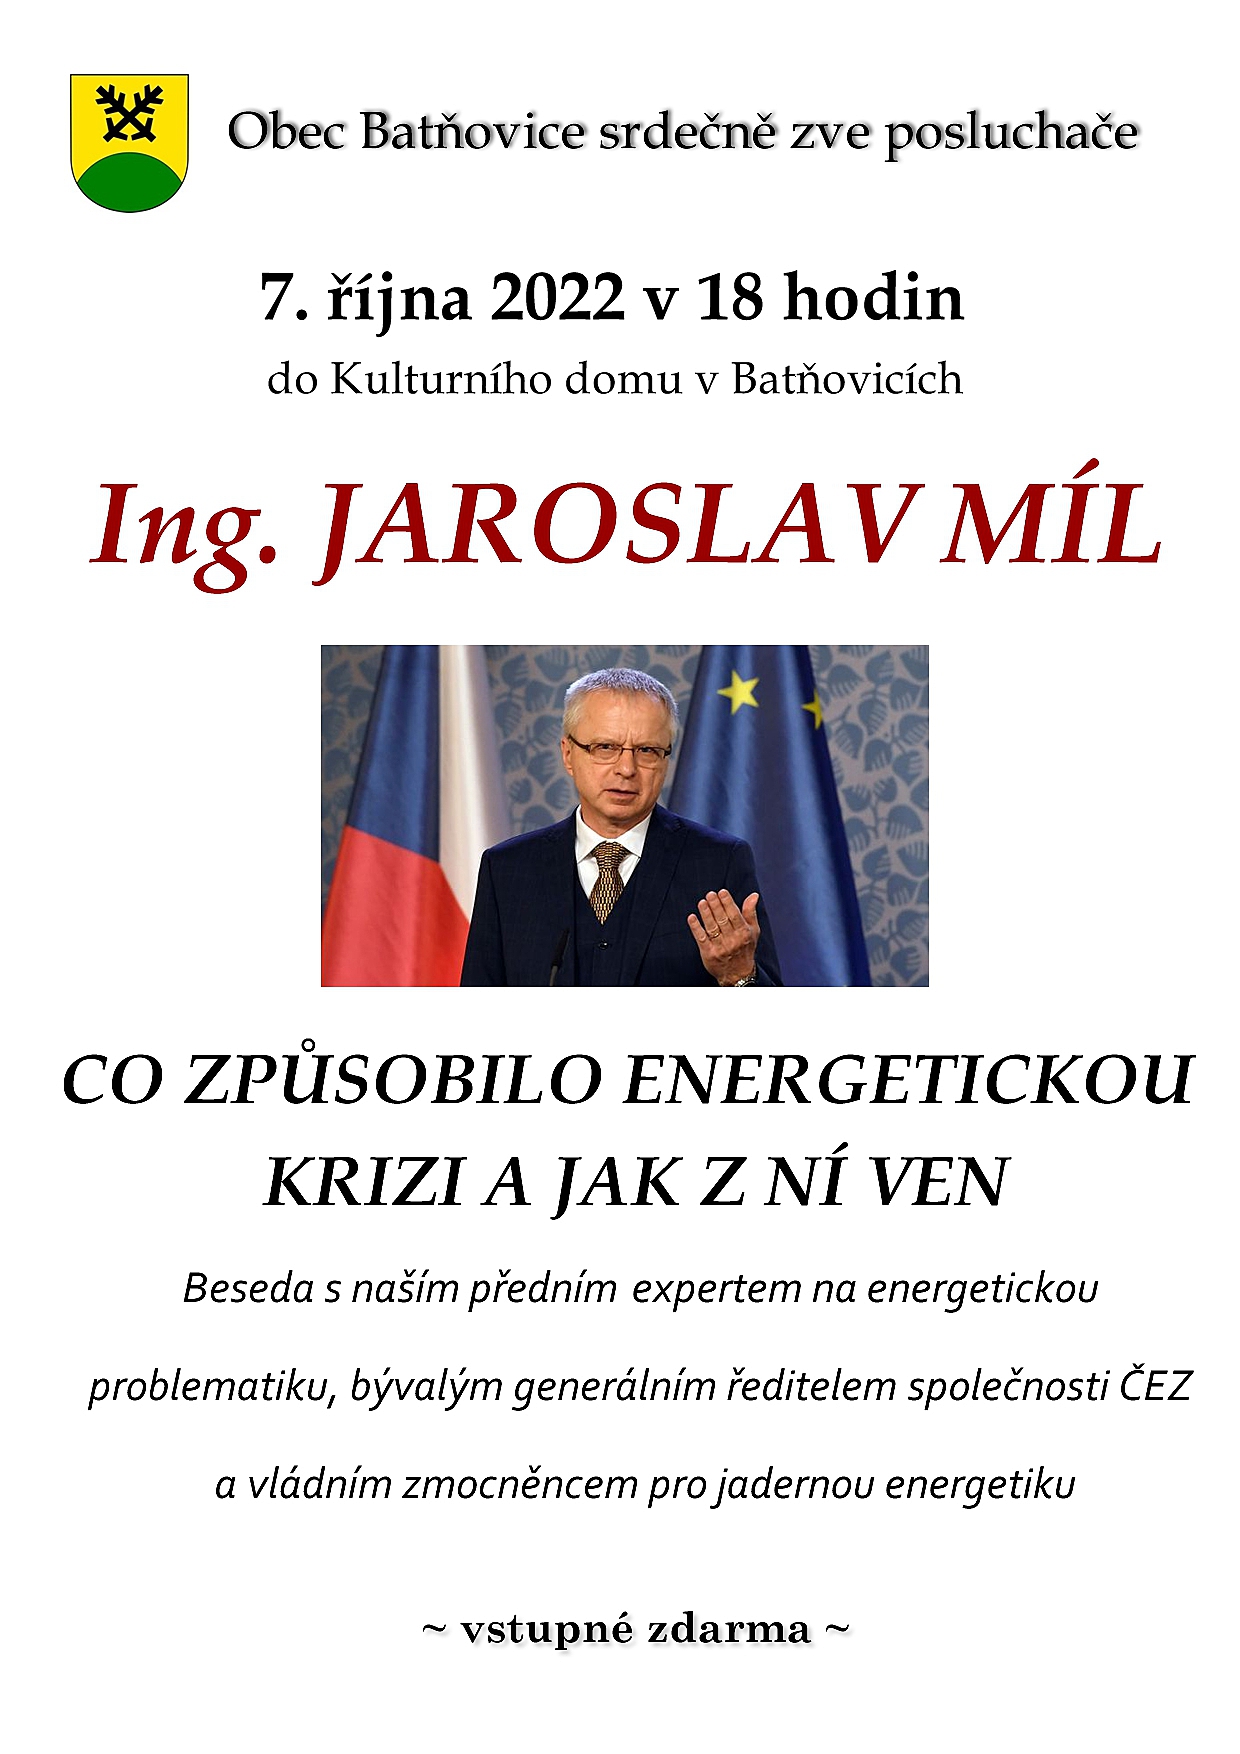 Bývalý ředitel ČEZ a bývalý vládní zmocněnec pro jadernou energetiku v Batňovicích